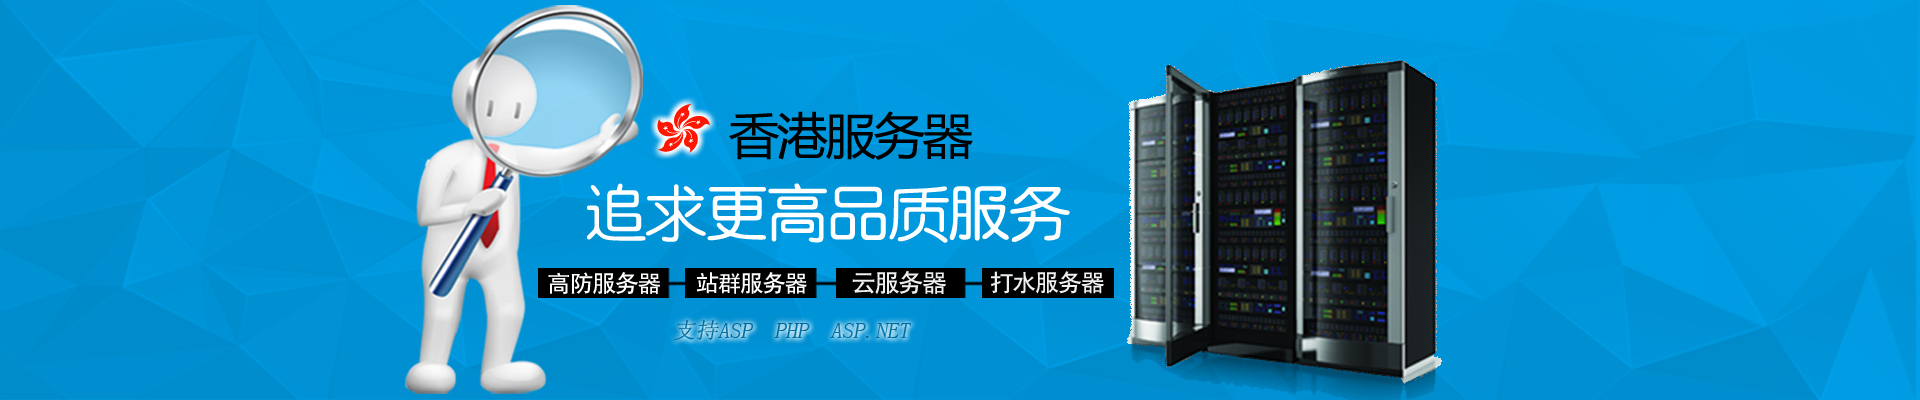 趣米云三网CN2、CN2 GIA香港VPS、香港独立服务器、香港站群服务器等